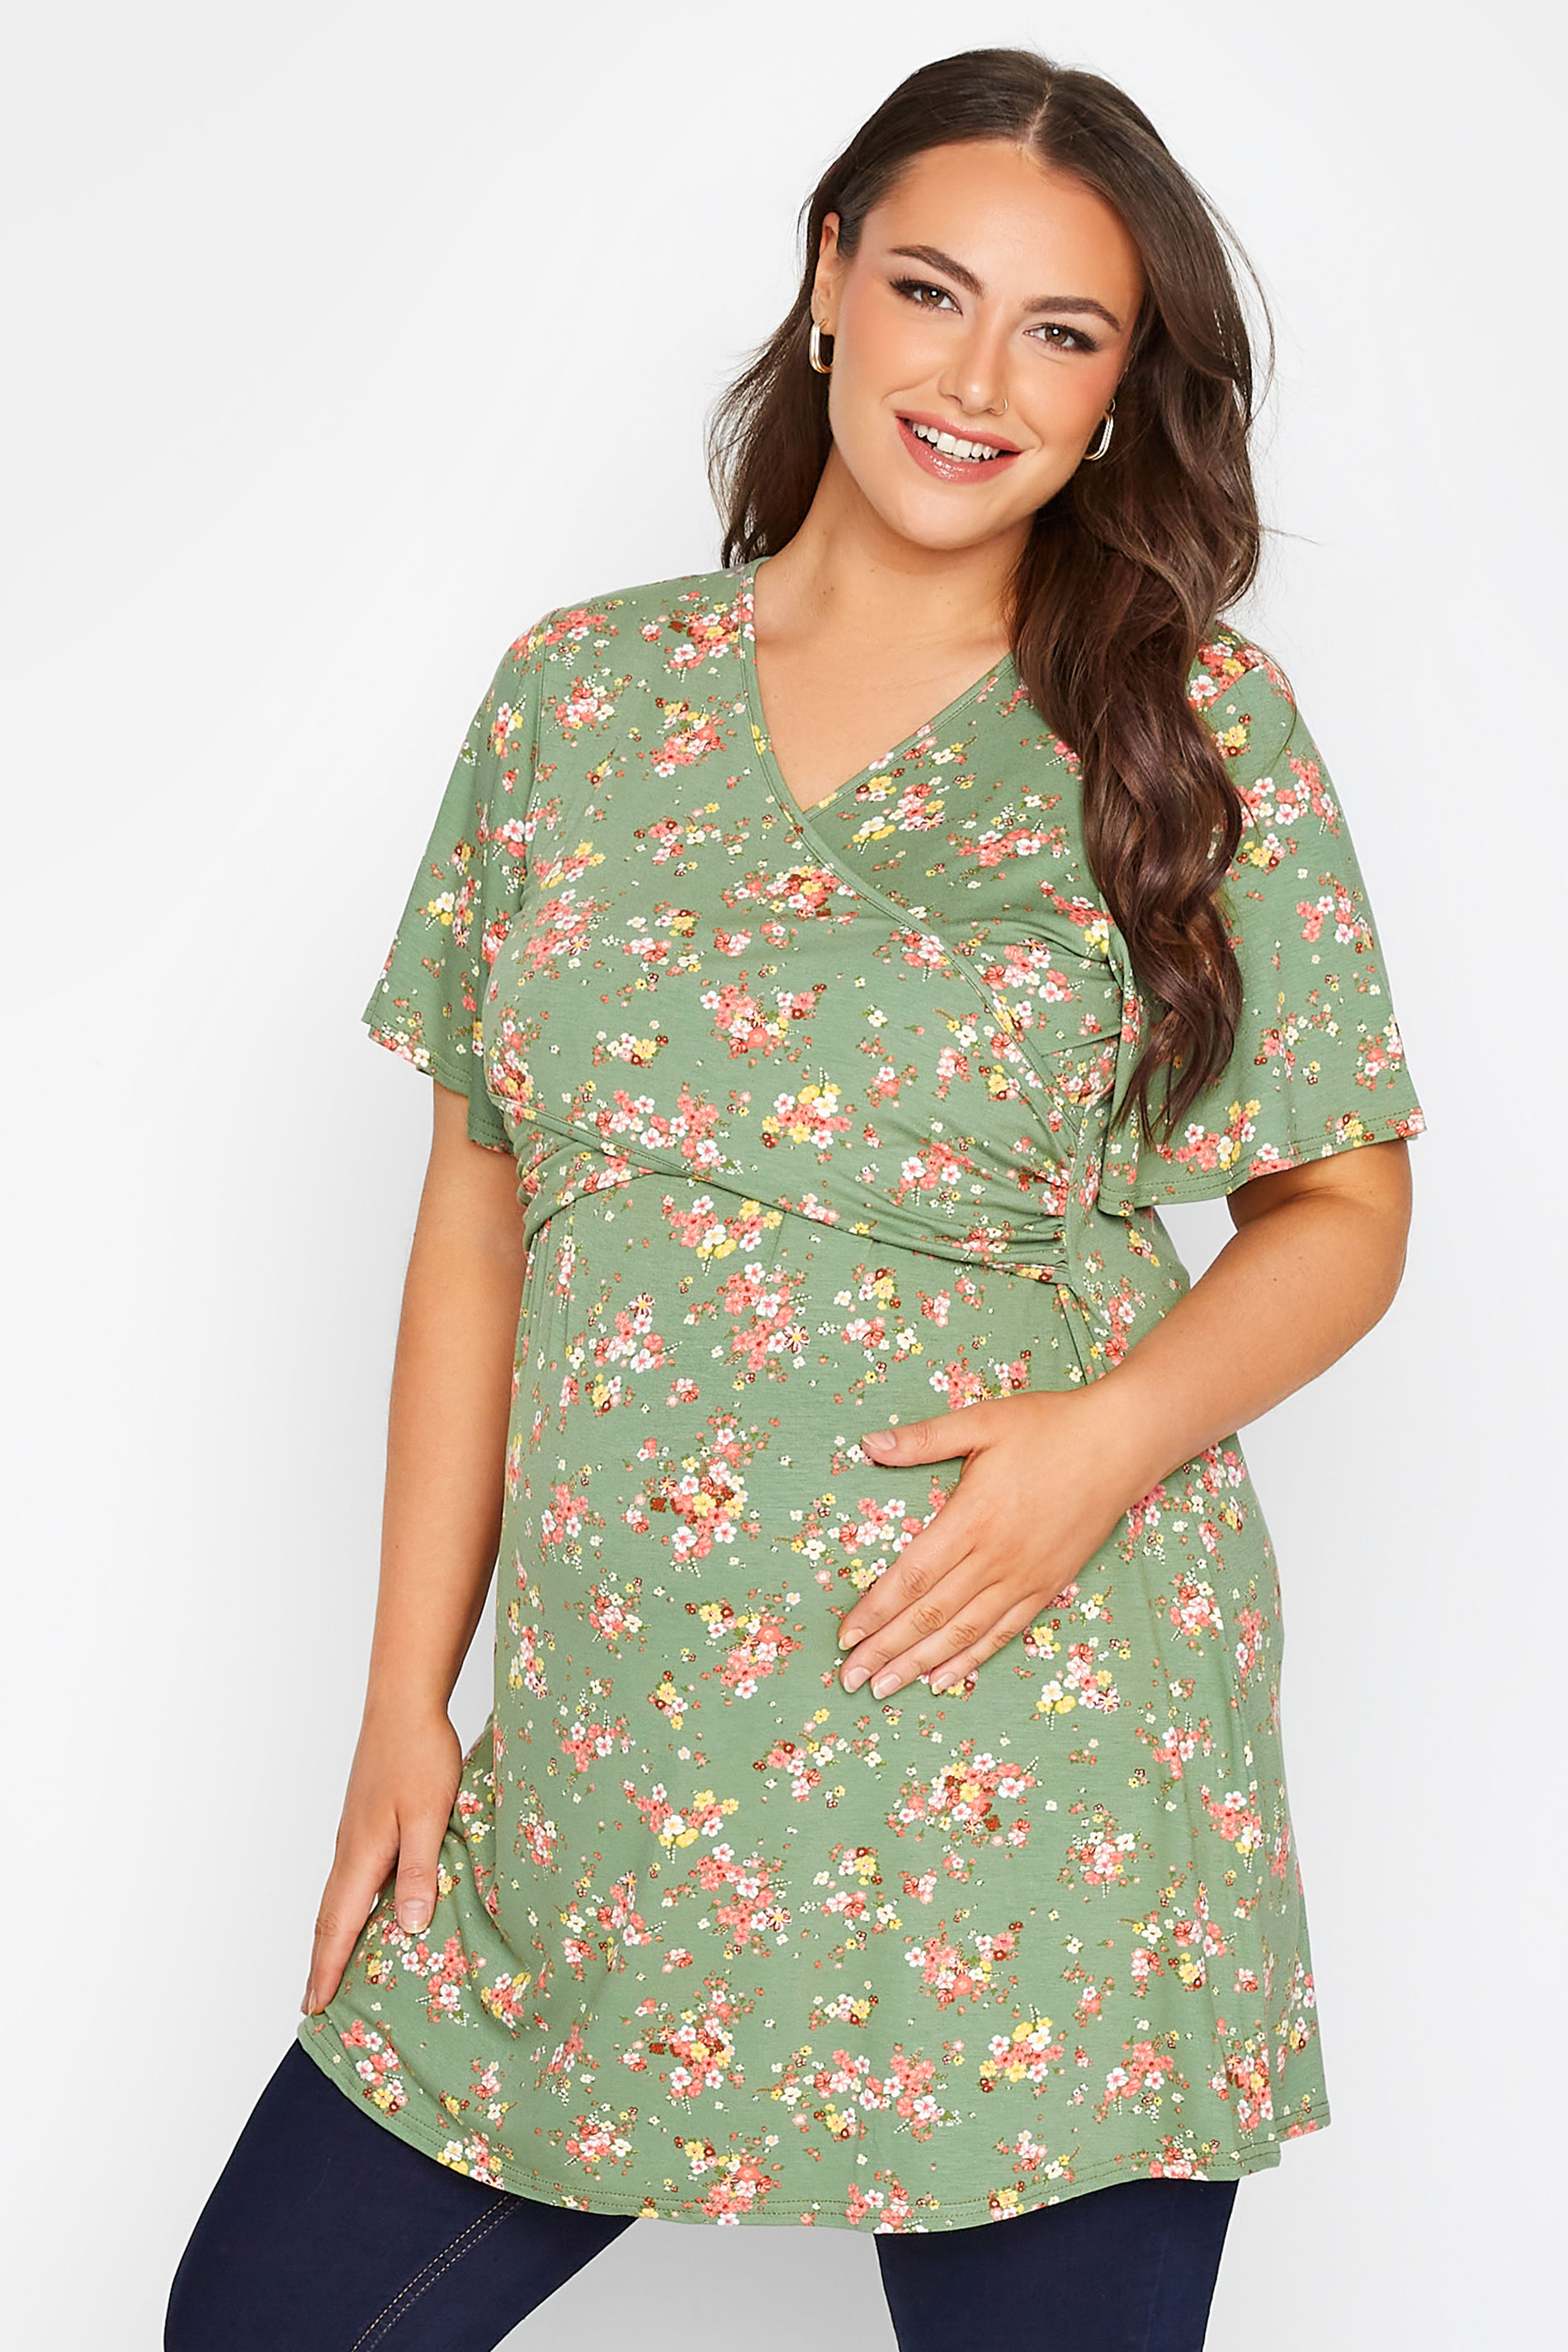 Grande taille  Vêtements de Grossesse Grande taille  Tops et t-shirts de grossesse | BUMP IT UP MATERNITY Curve Green Floral Nursing Top - ME77111